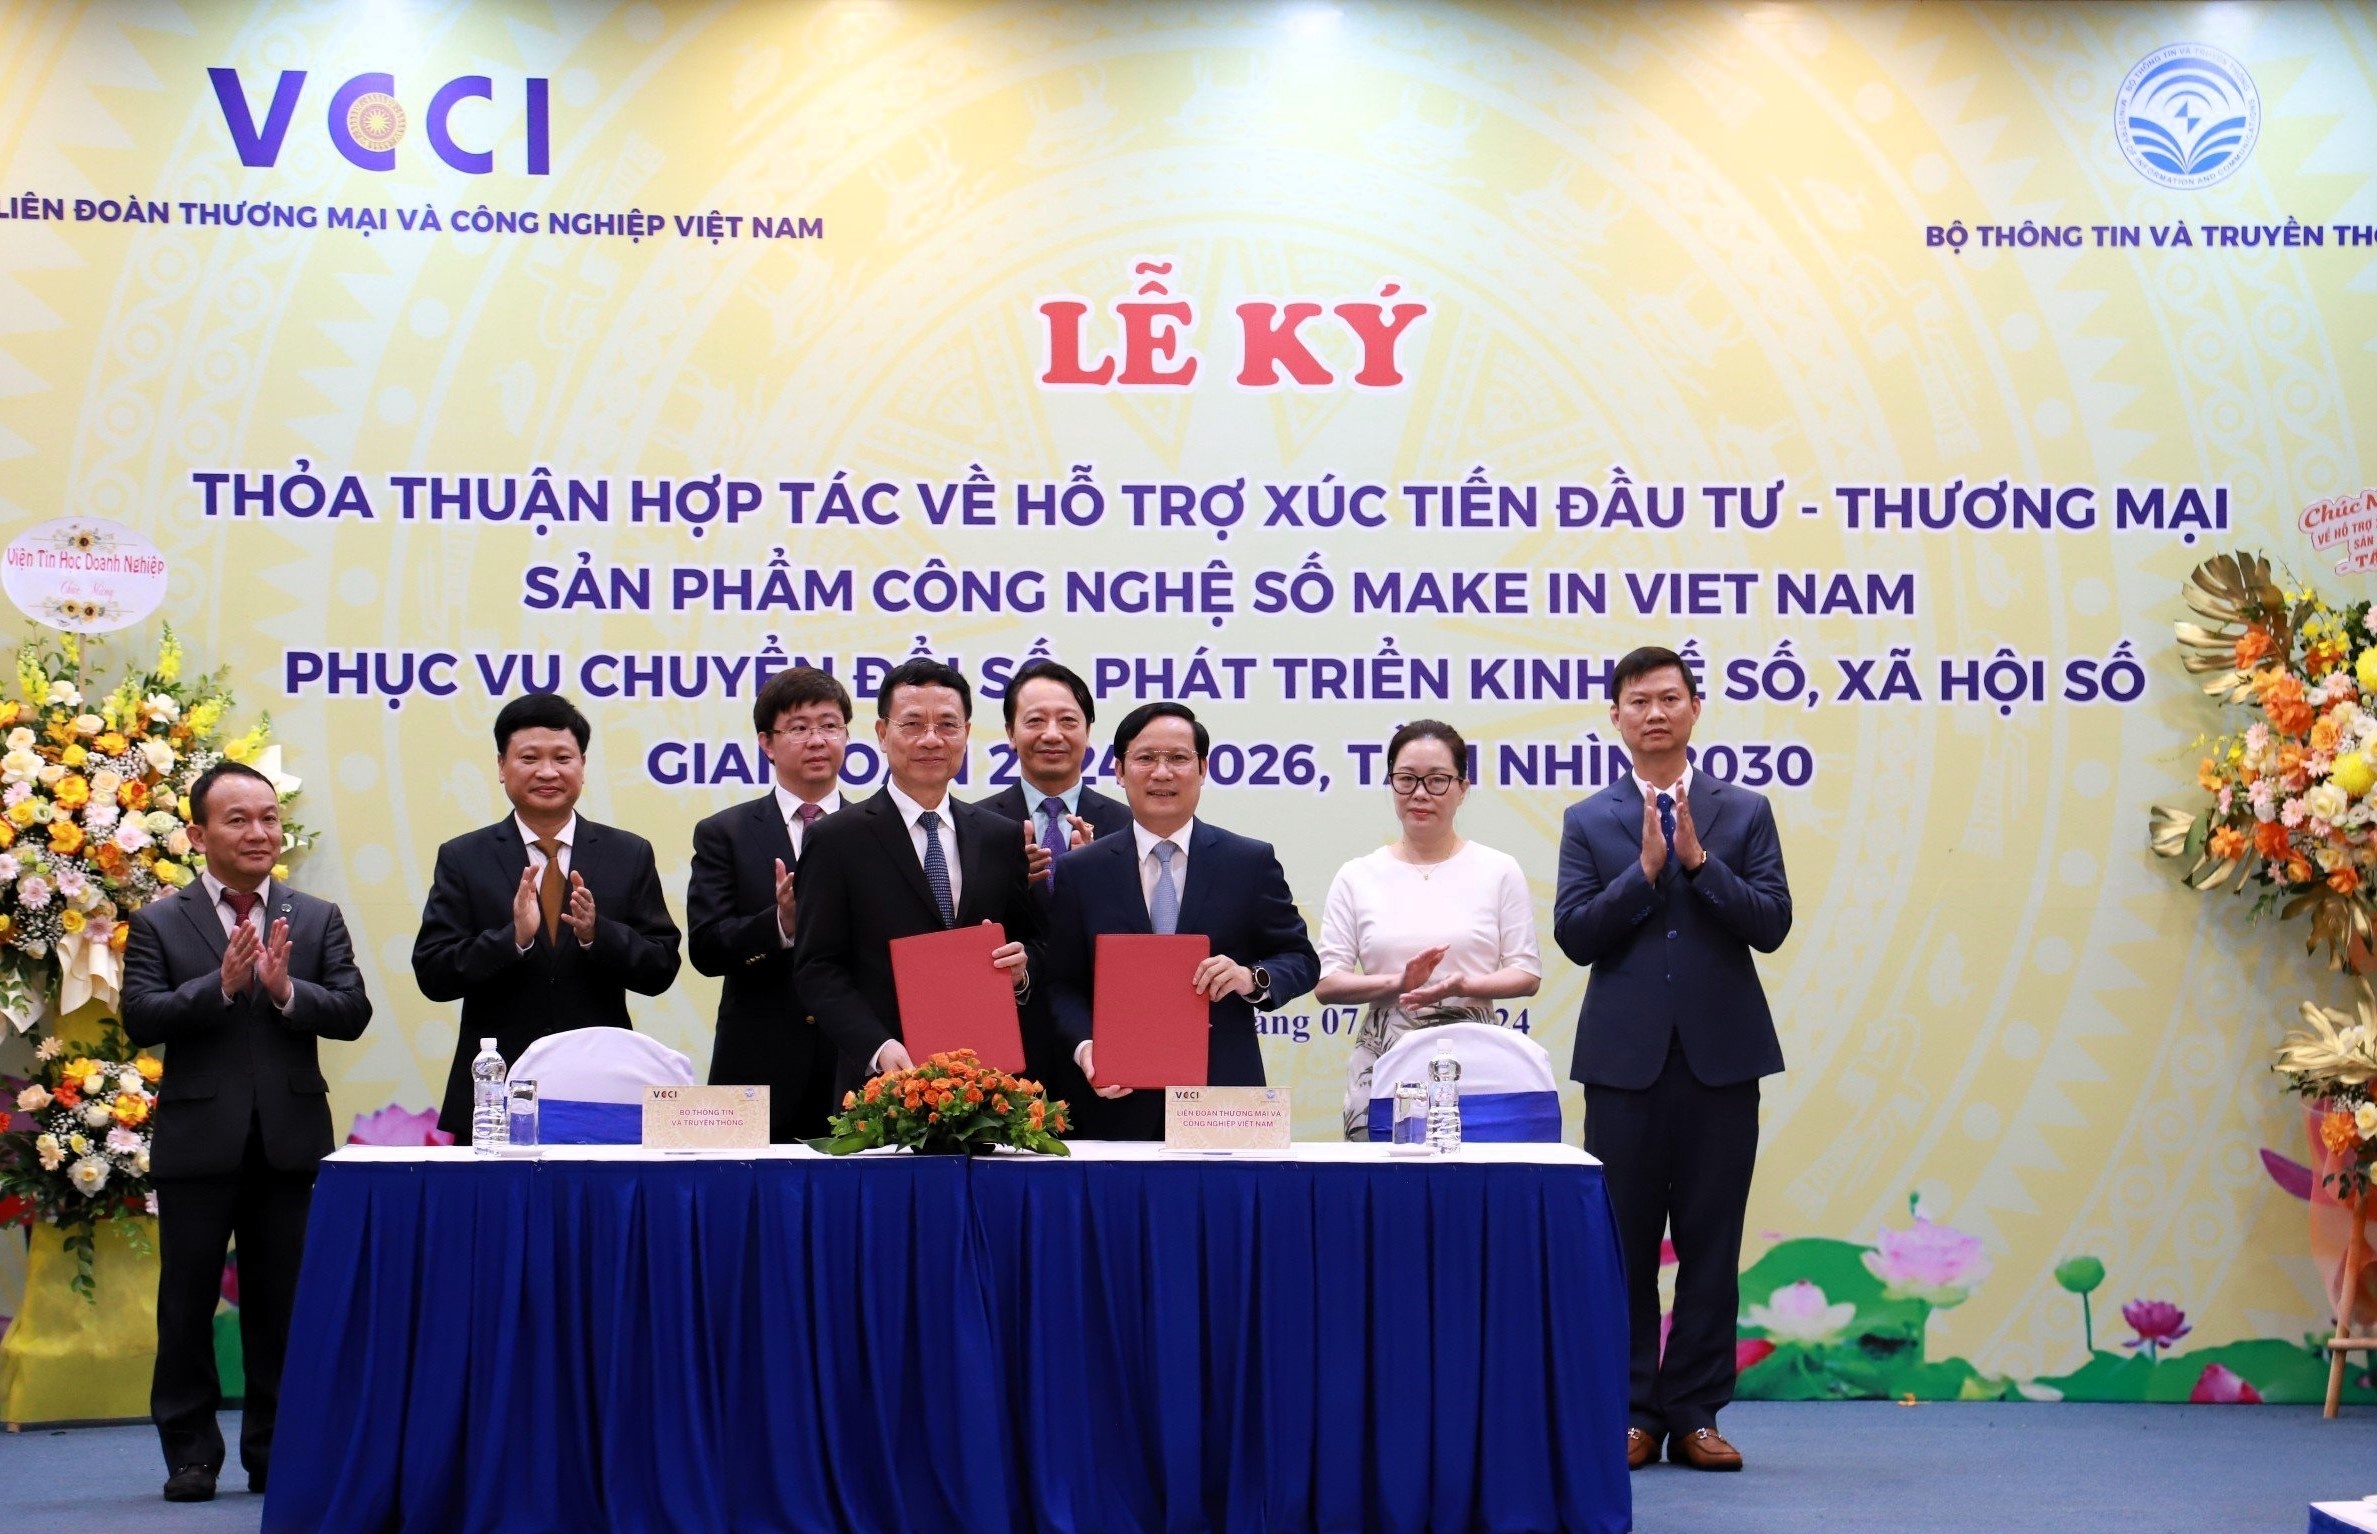 Bộ trưởng Bộ Thông tin và Truyền thông Nguyễn Mạnh Hùng và Chủ tịch VCCI Phạm Tấn Công ký kết Thỏa thuận hợp tác hỗ trợ xúc tiến đầu tư – thương mại sản phẩm công nghệ số Make in Viet Nam phục vụ chuyển đổi số, phát triển kinh tế số và xã hội số giai đoạn 2024-2026, tầm nhìn 203